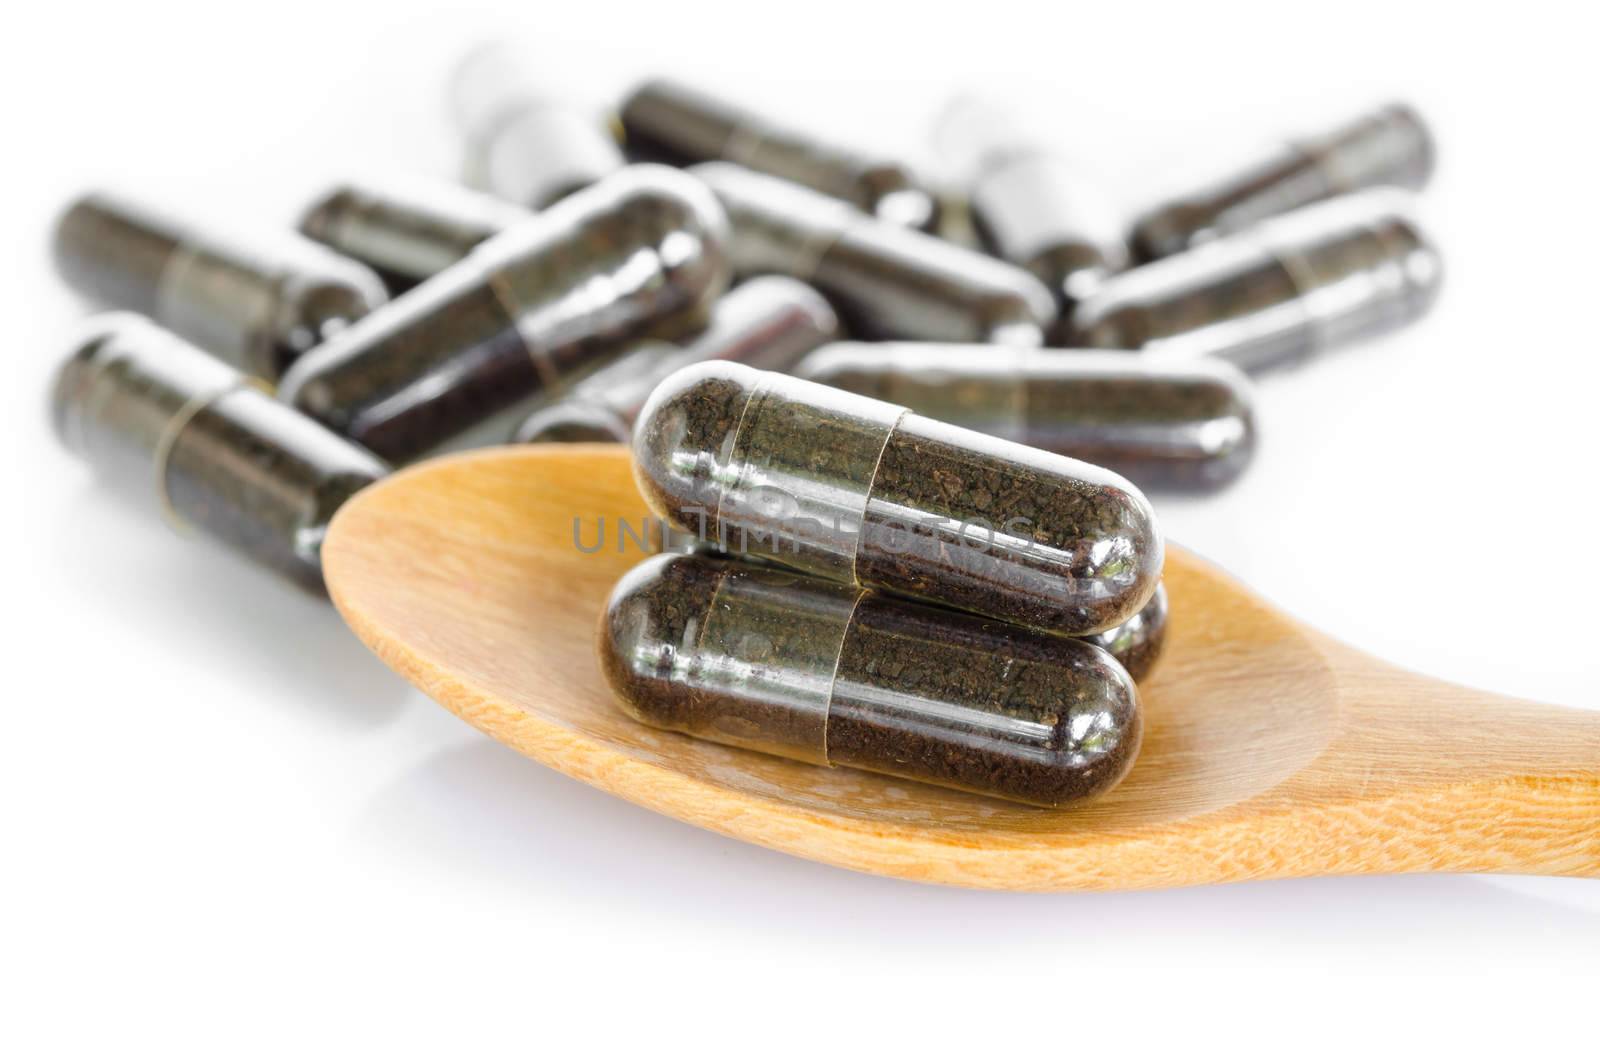 Black herbal capsule drug in wooden spoon on white background.